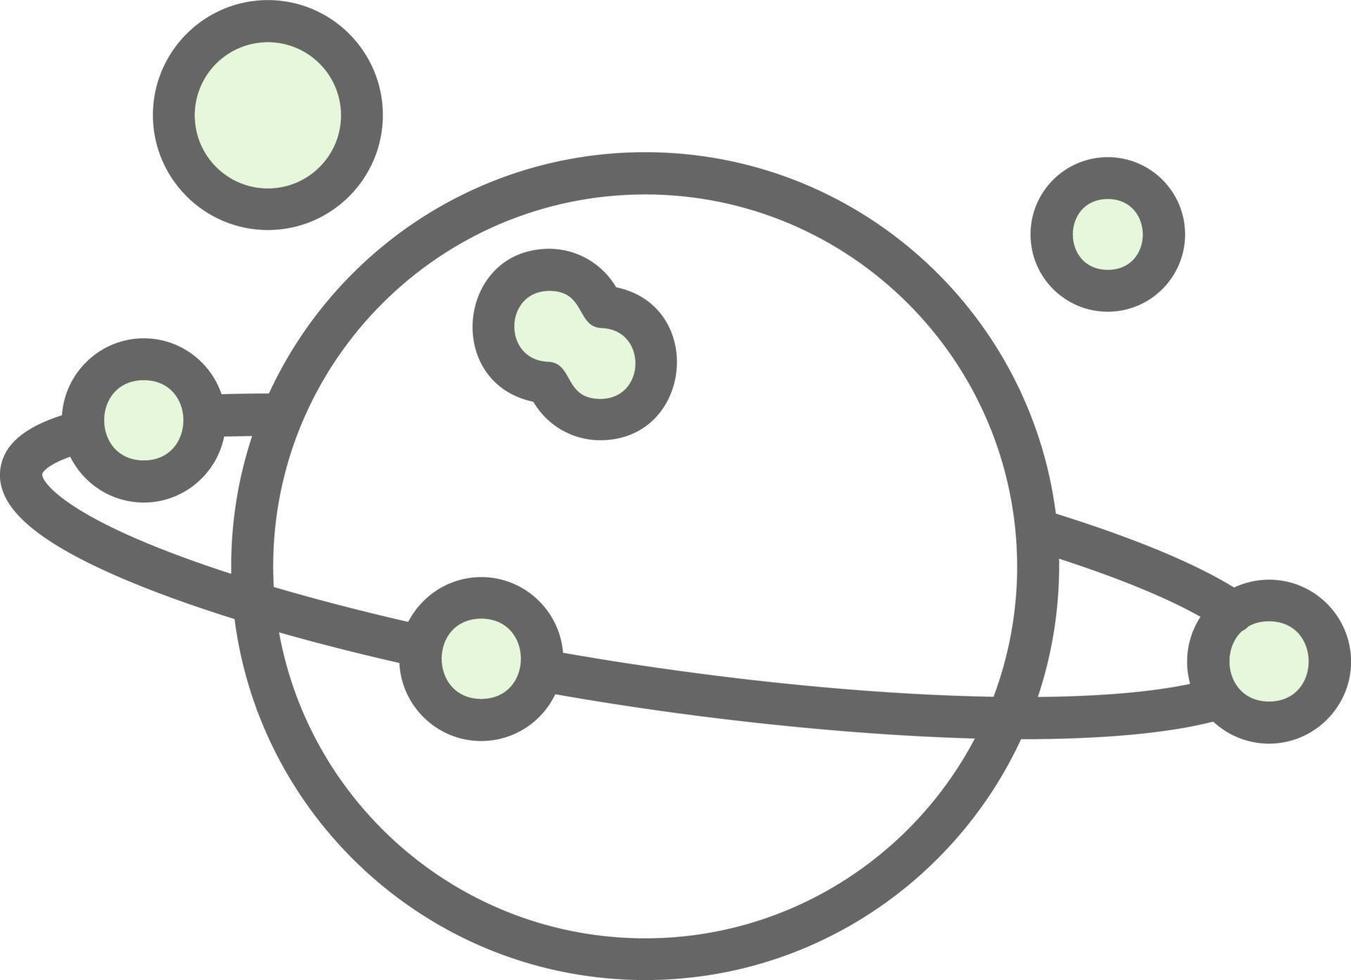 diseño de icono de vector de sistema solar